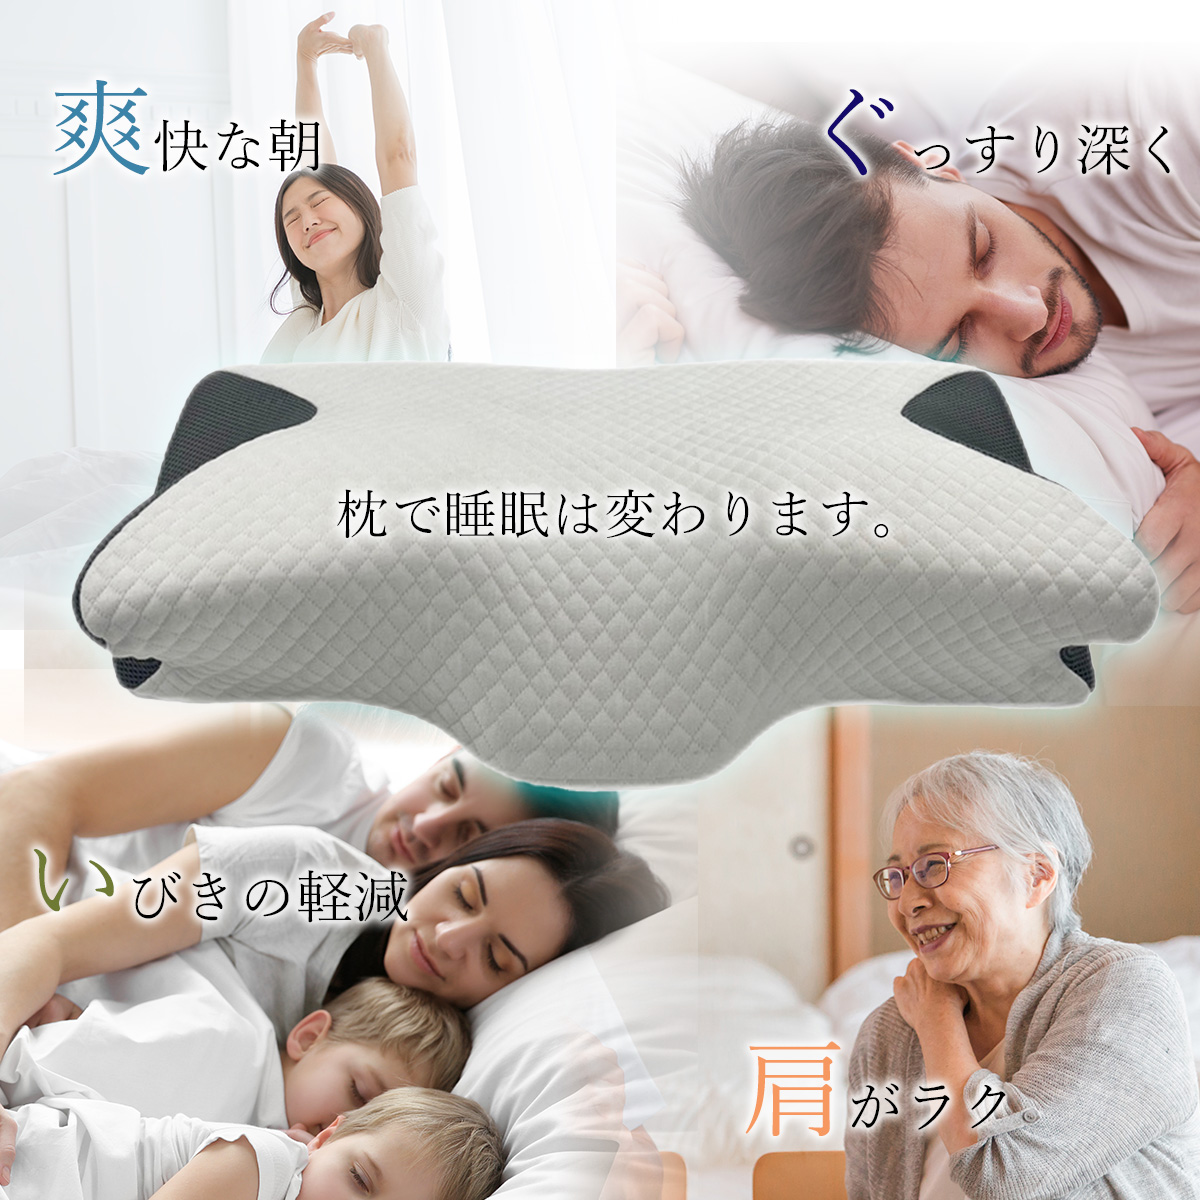 大人の上質 頚椎牽引枕 2個セット 肩こり 首こり いびき予防 低反発 安眠枕 グレー